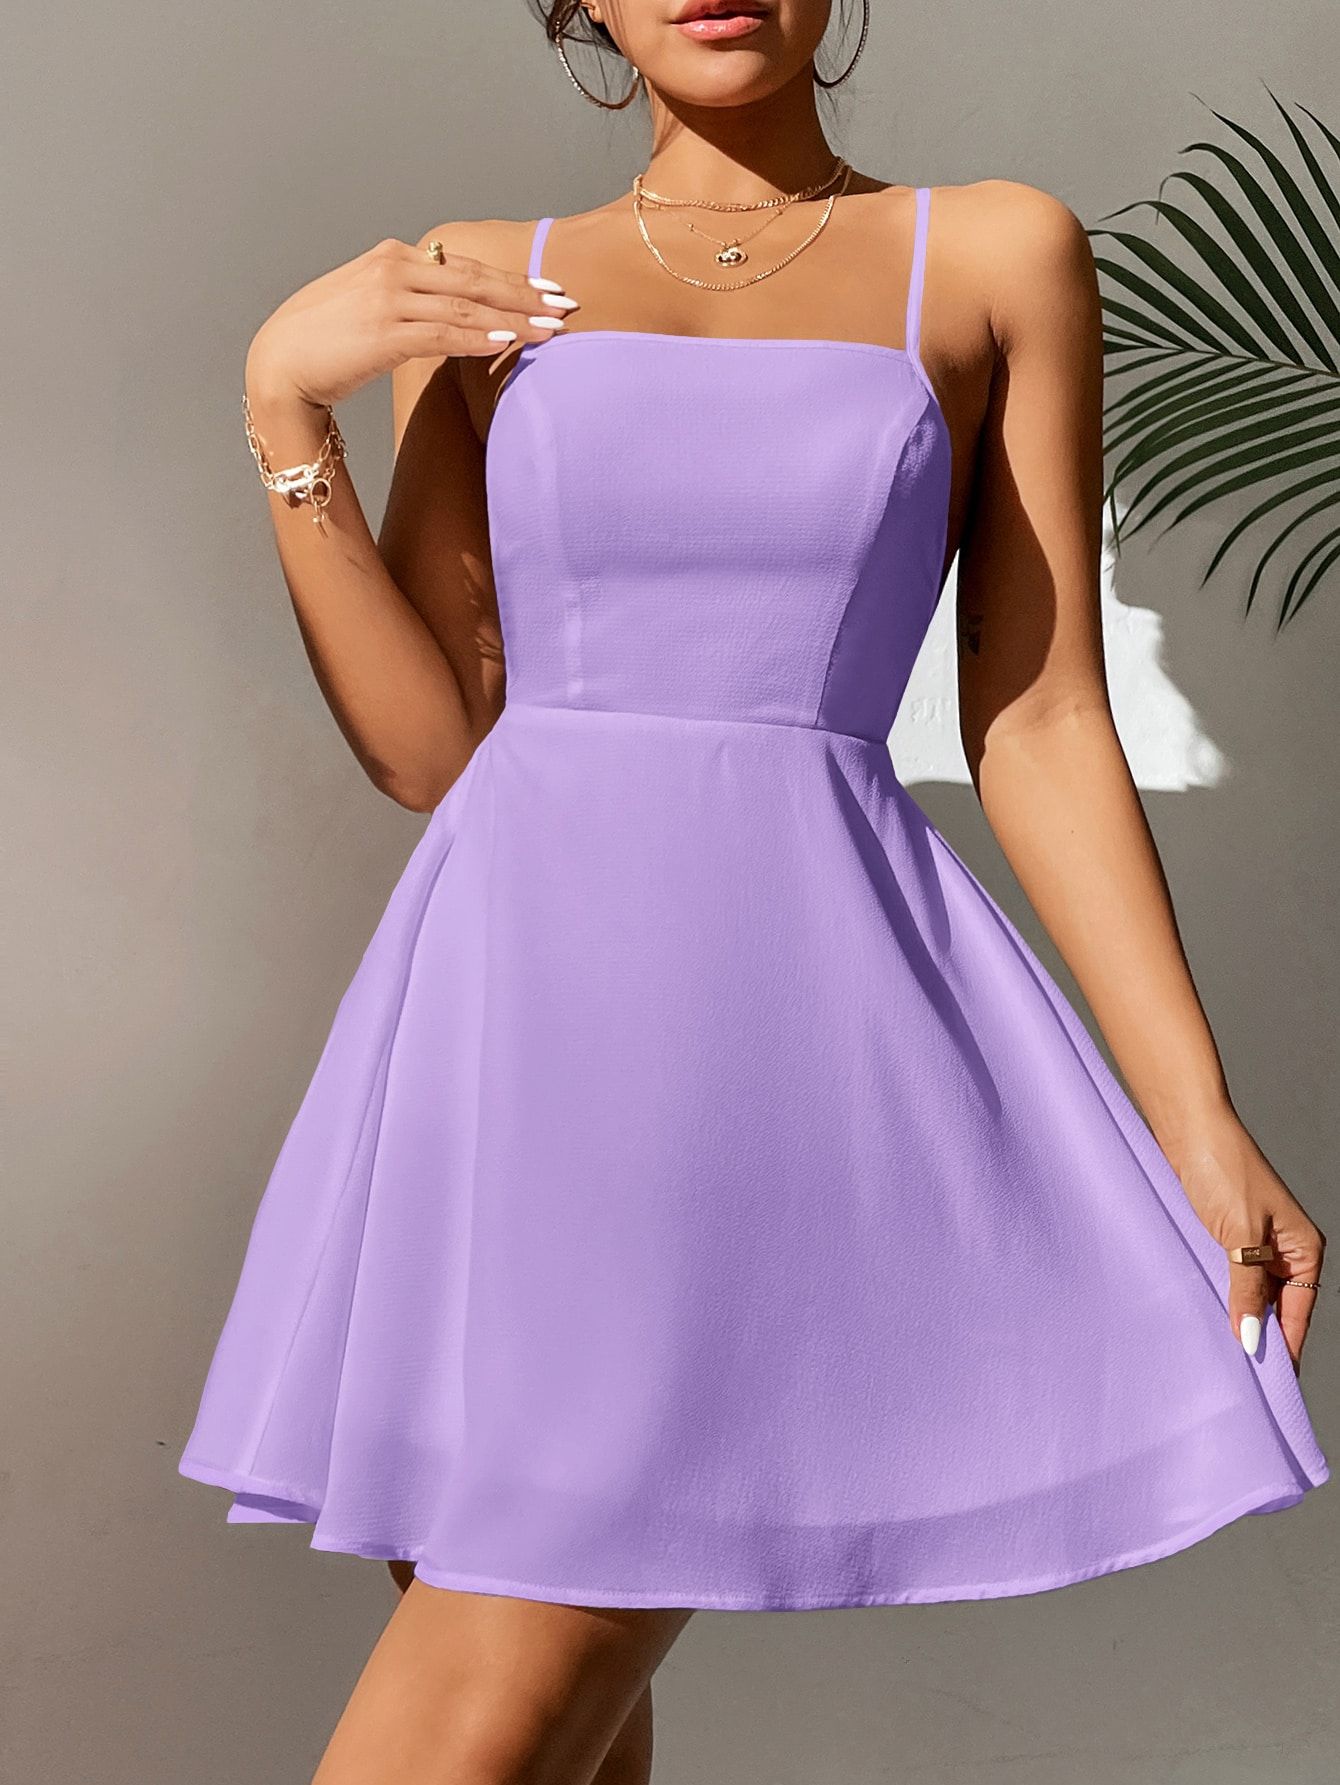 Regal Elegance: Purple Dresses for Royal Appeal